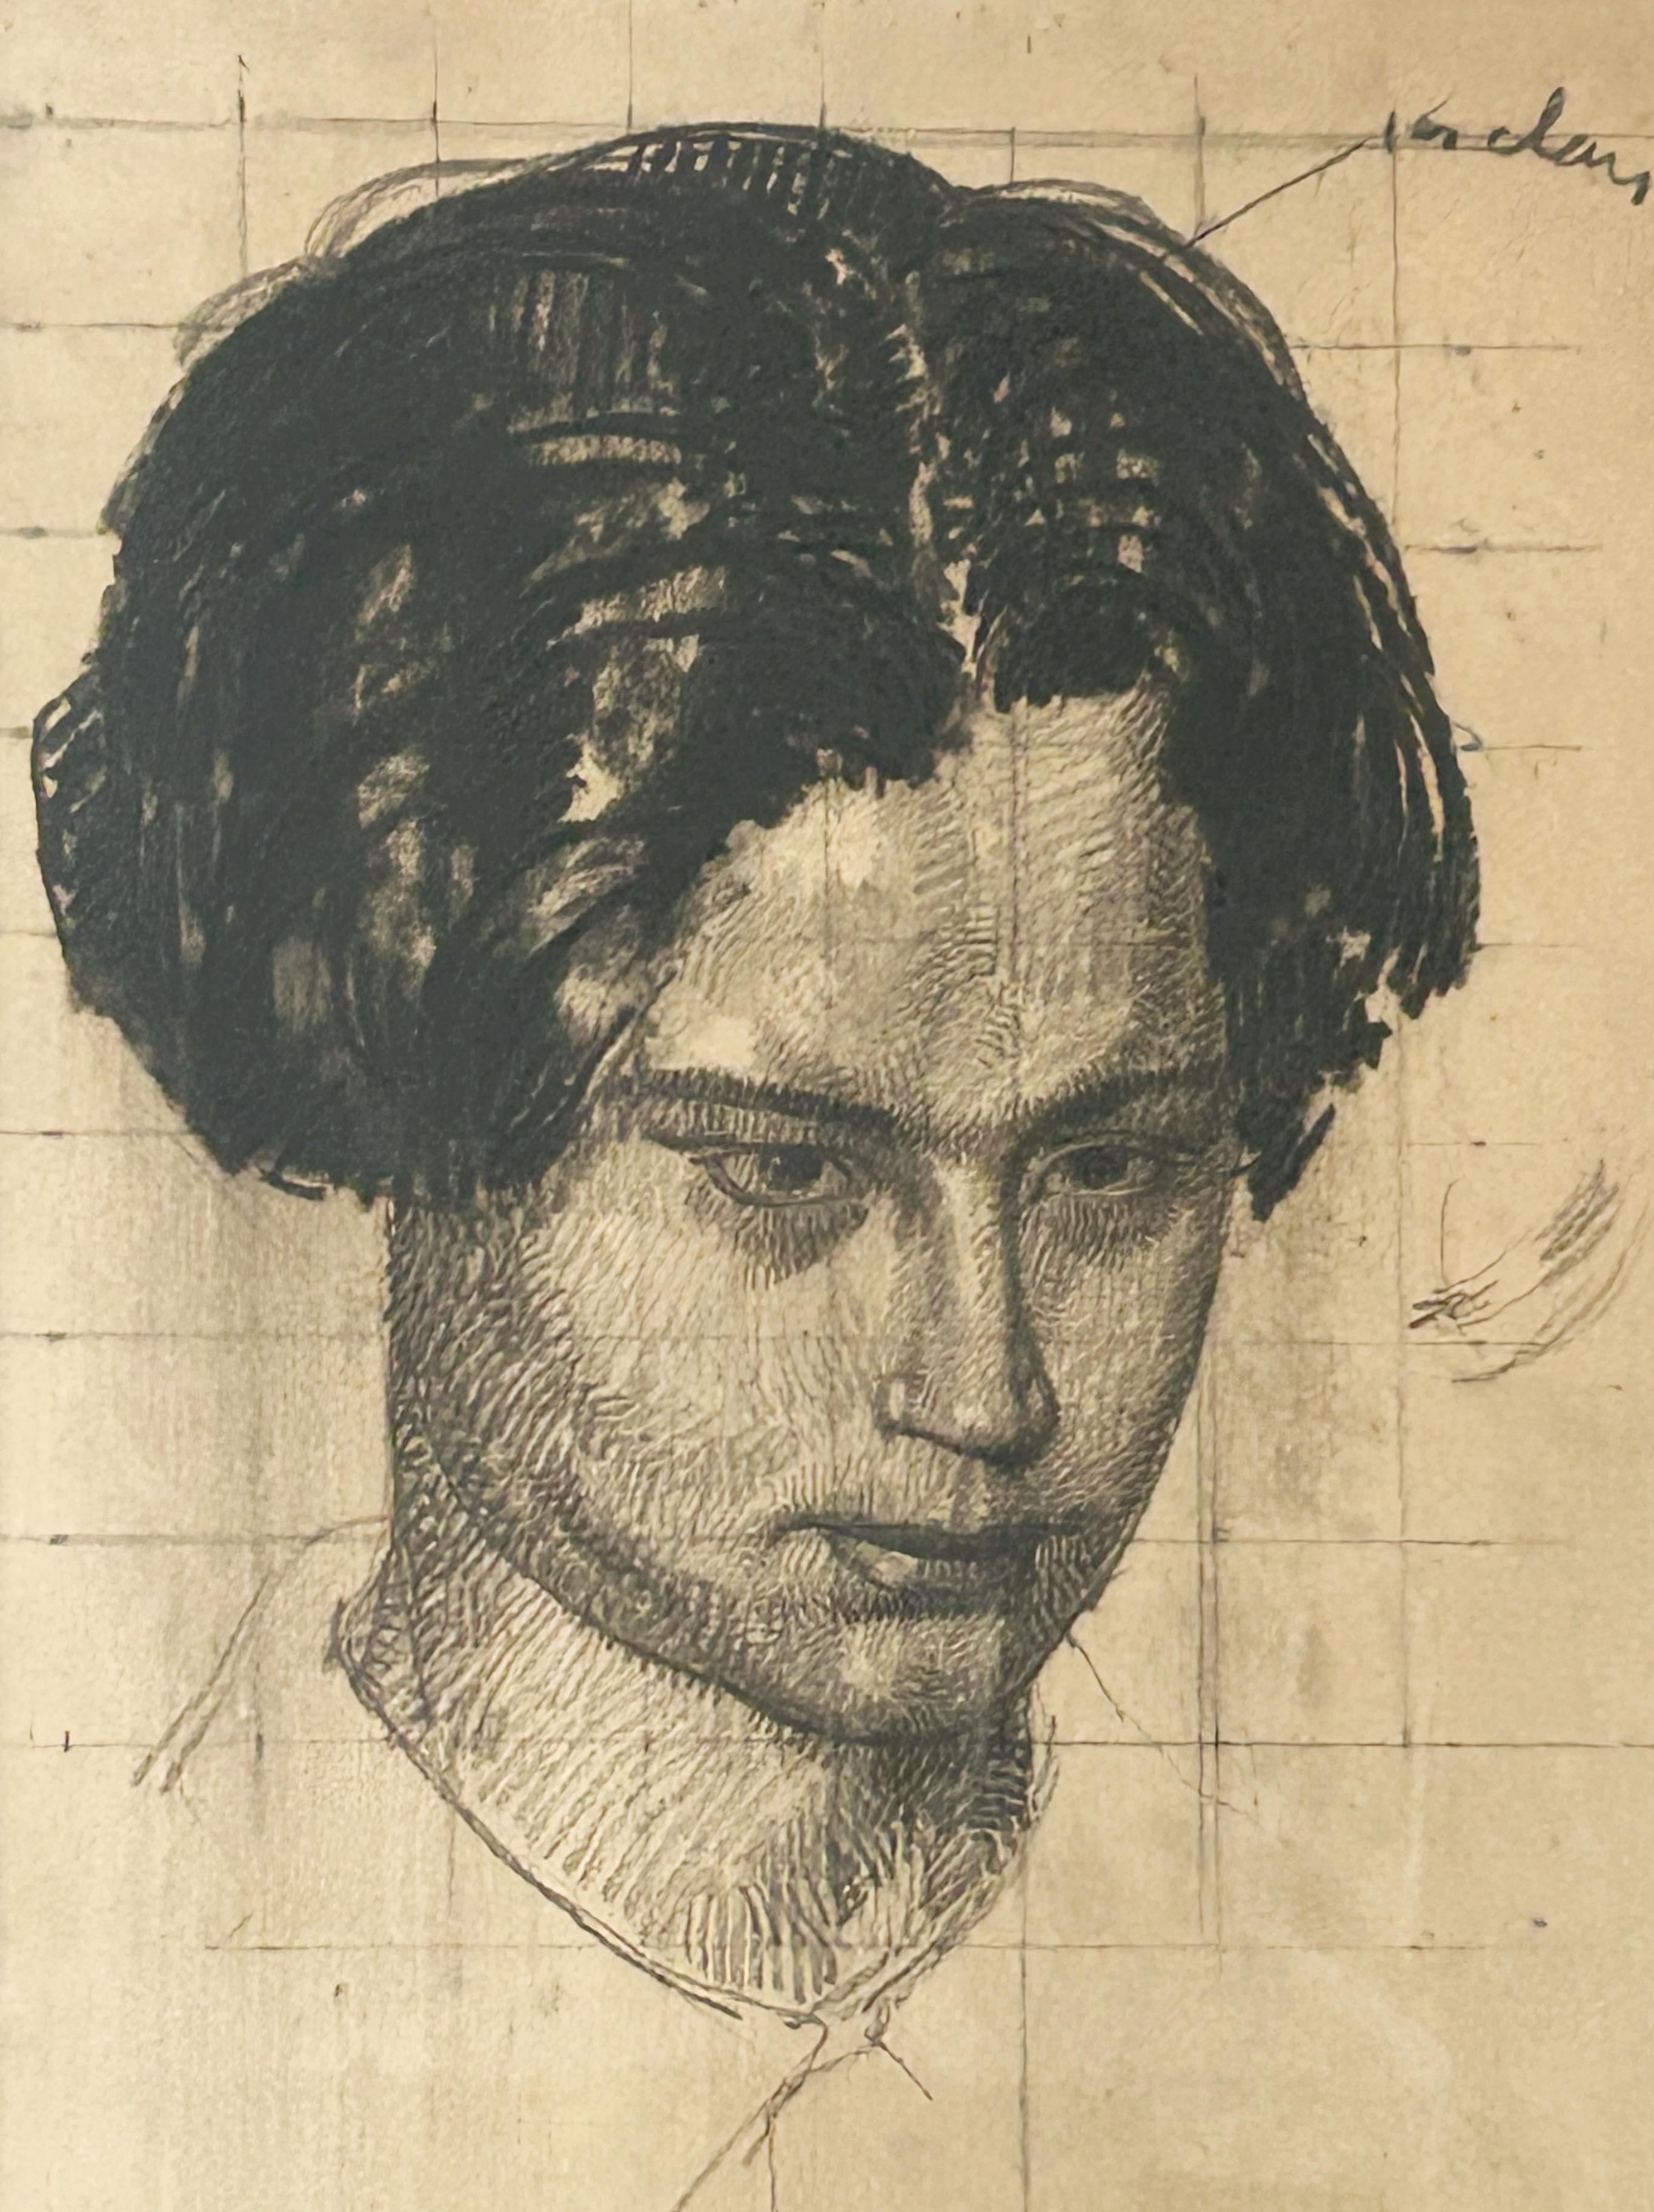 Jules OURY dit MARCEL-LENOIR (1872-1931)

Porträt von Raphaël Fumet (1898-1979) ; vorbereitende Studie für 